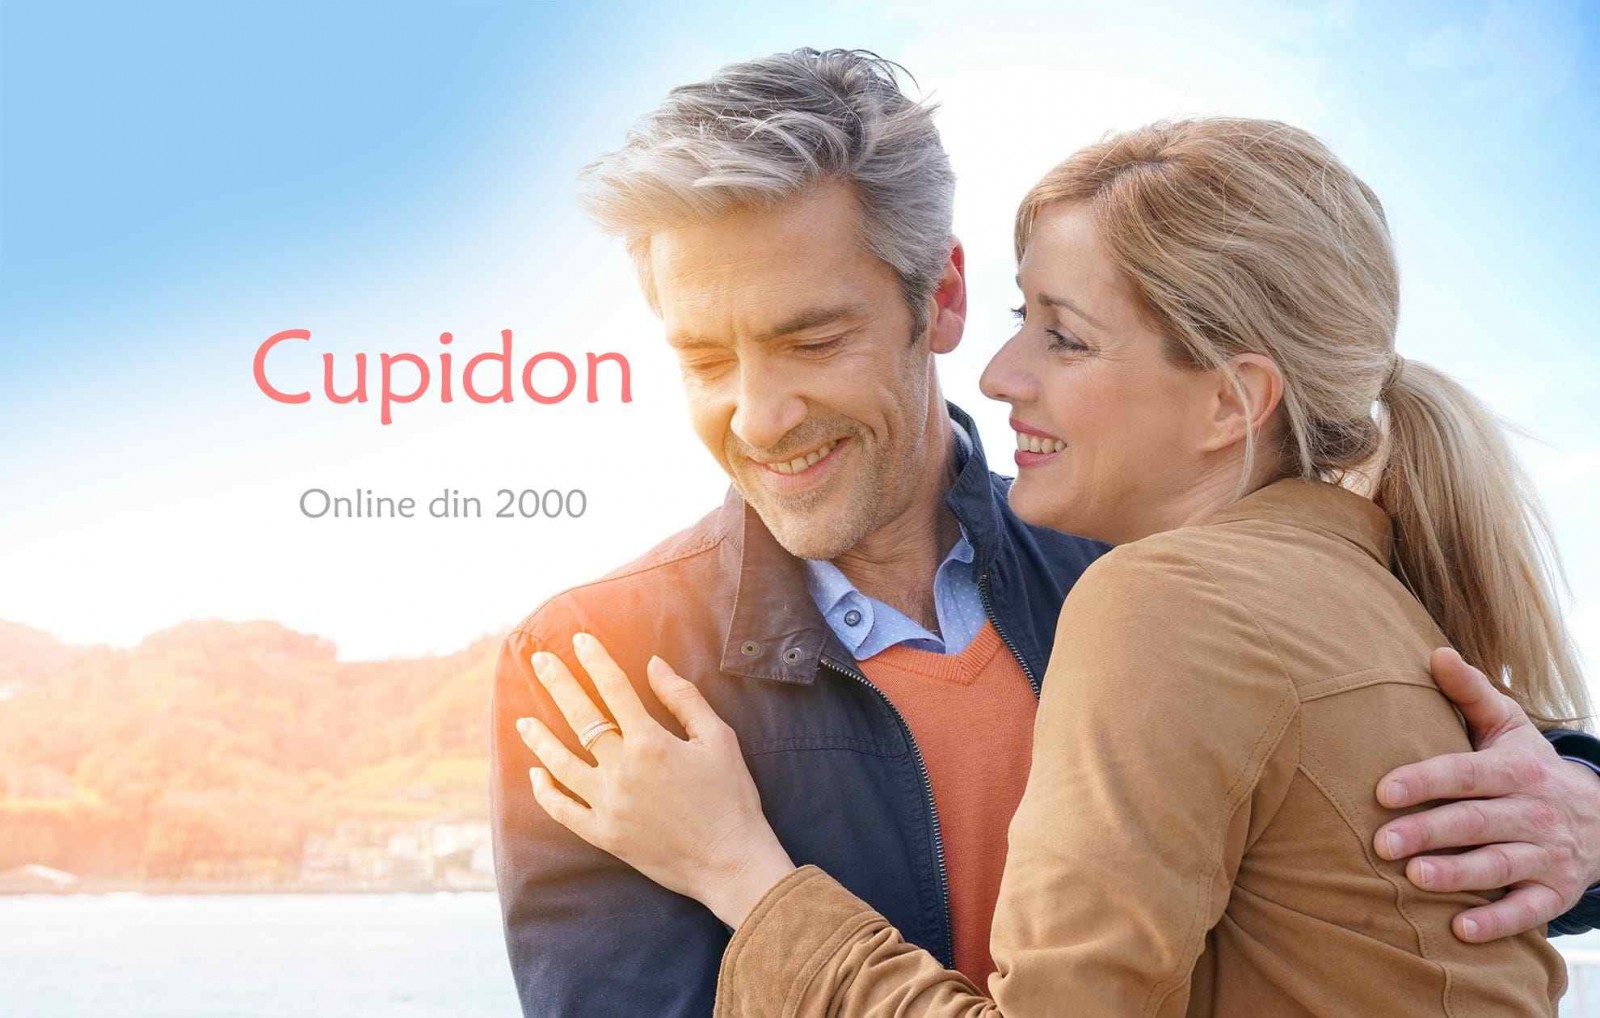 site de dating cu cupidon)